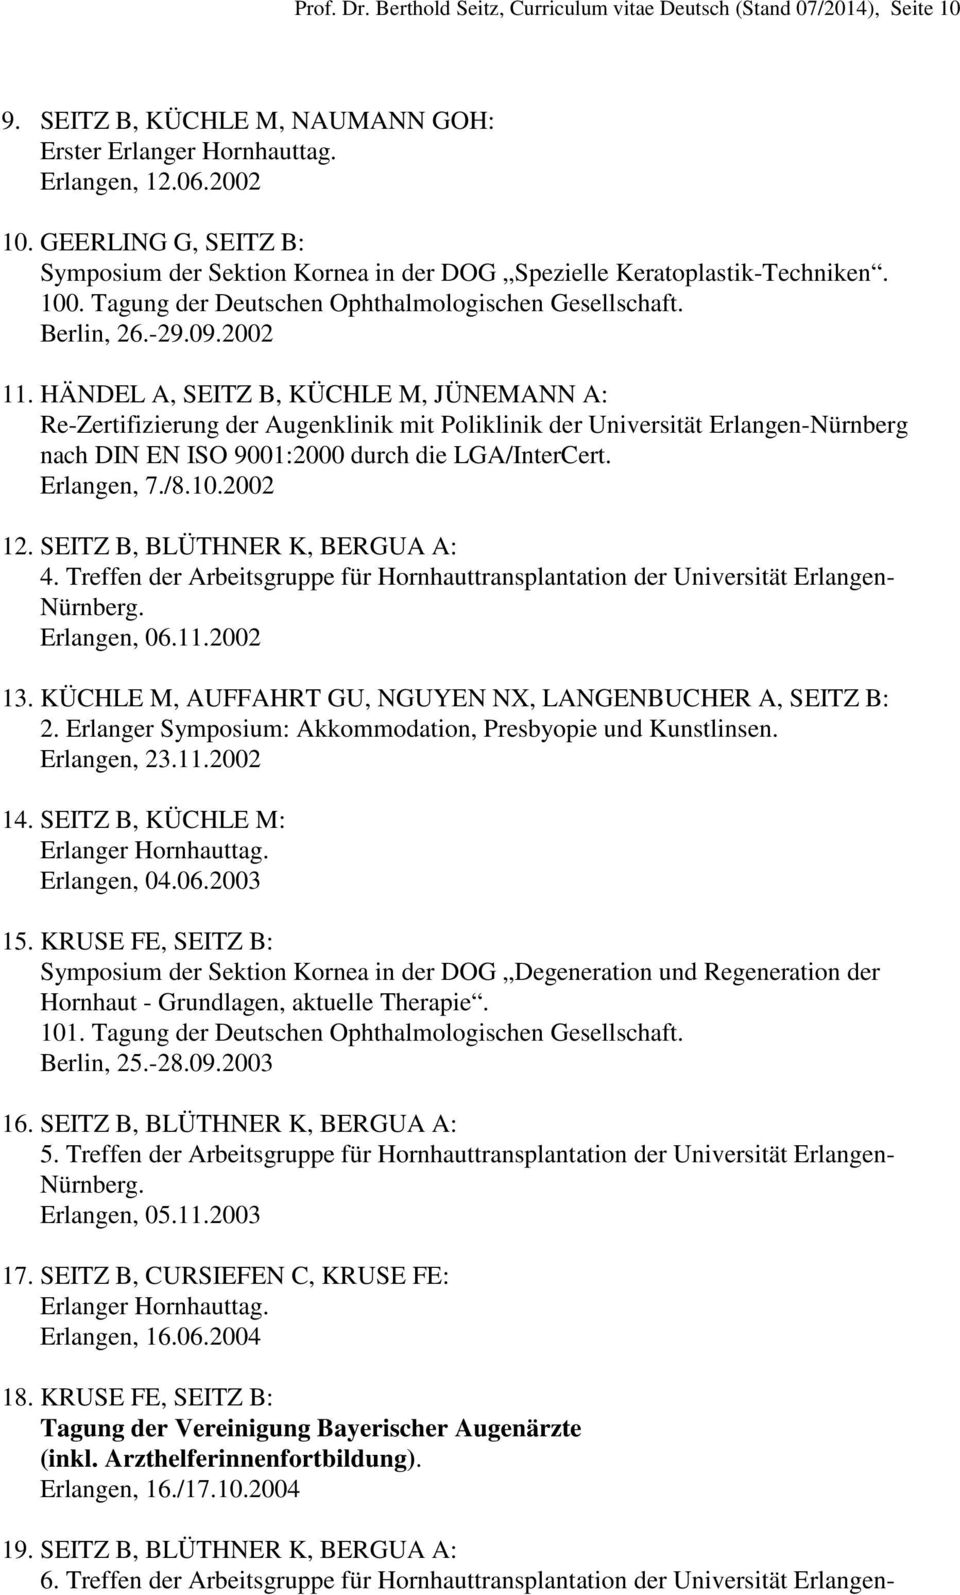 HÄNDEL A, SEITZ B, KÜCHLE M, JÜNEMANN A: Re-Zertifizierung der Augenklinik mit Poliklinik der Universität Erlangen-Nürnberg nach DIN EN ISO 9001:2000 durch die LGA/InterCert. Erlangen, 7./8.10.